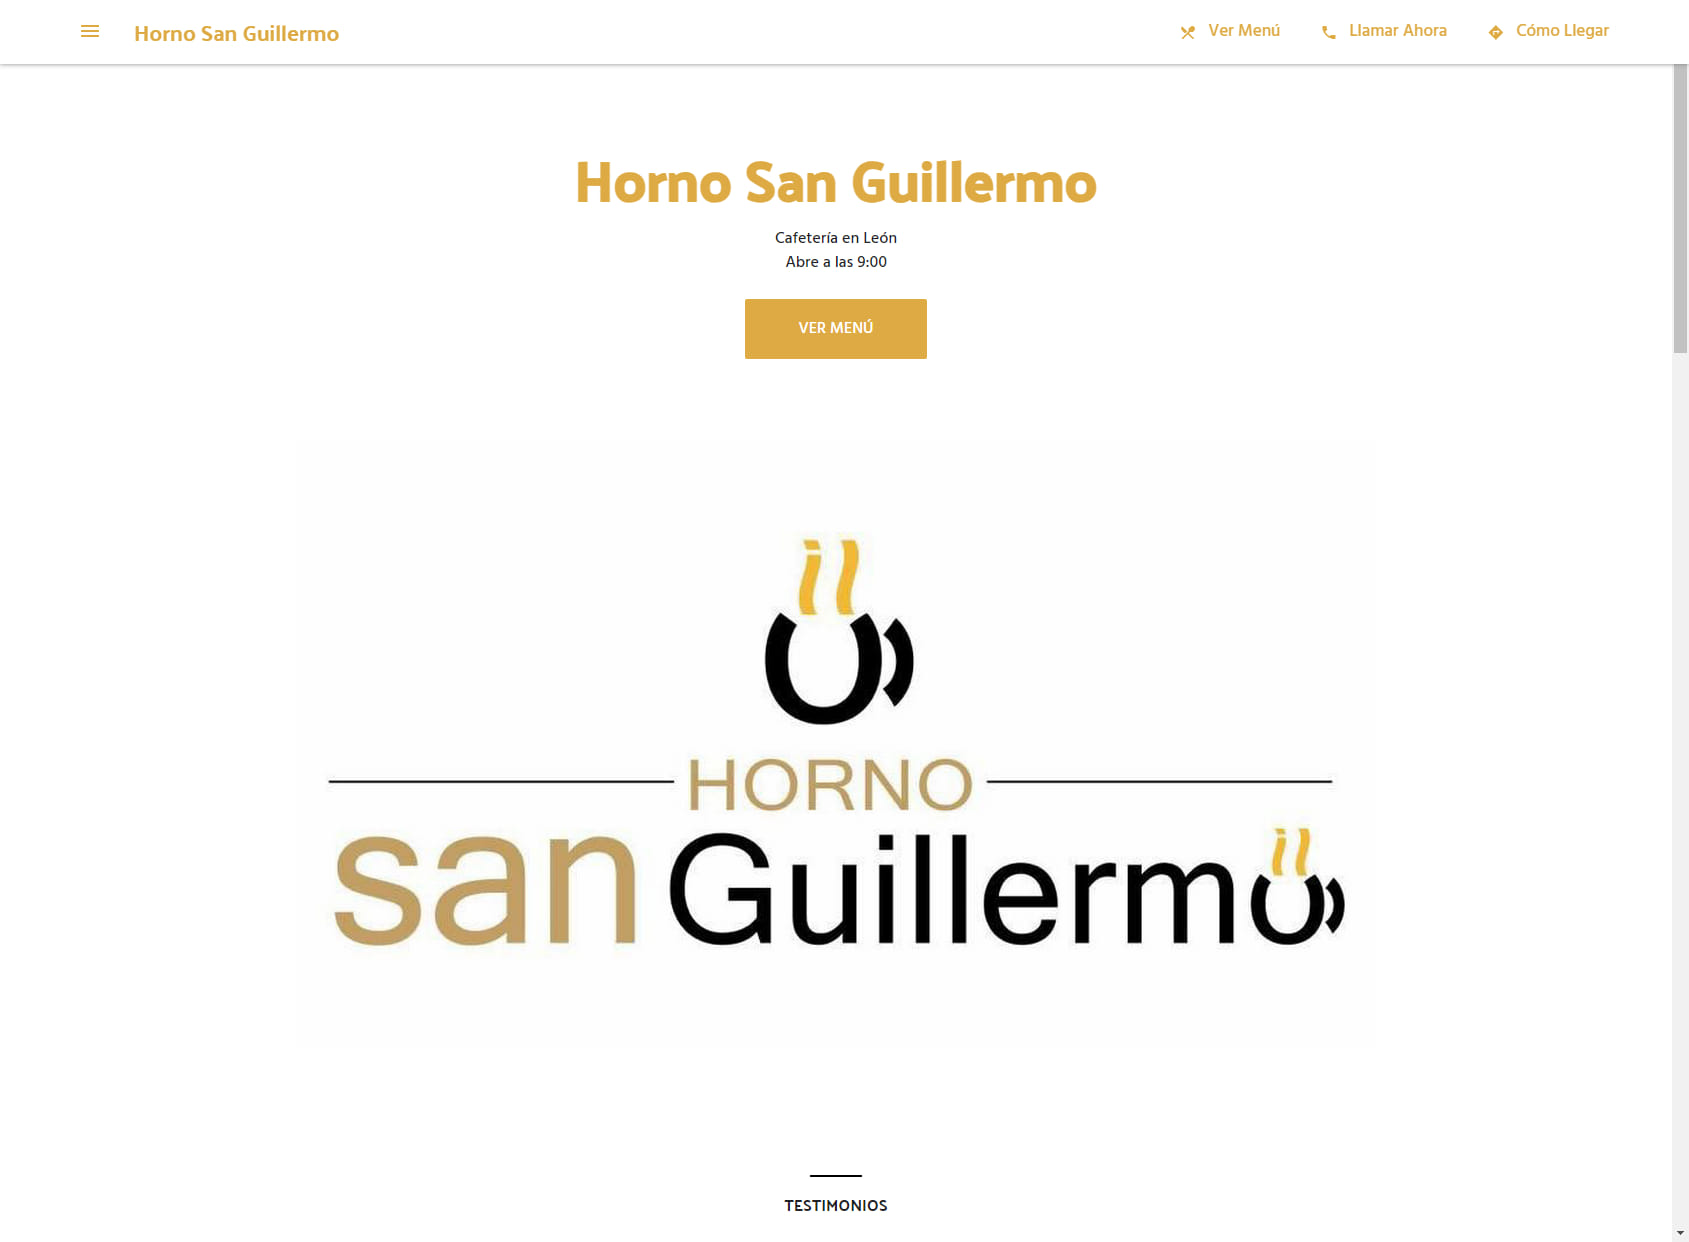 Horno San Guillermo